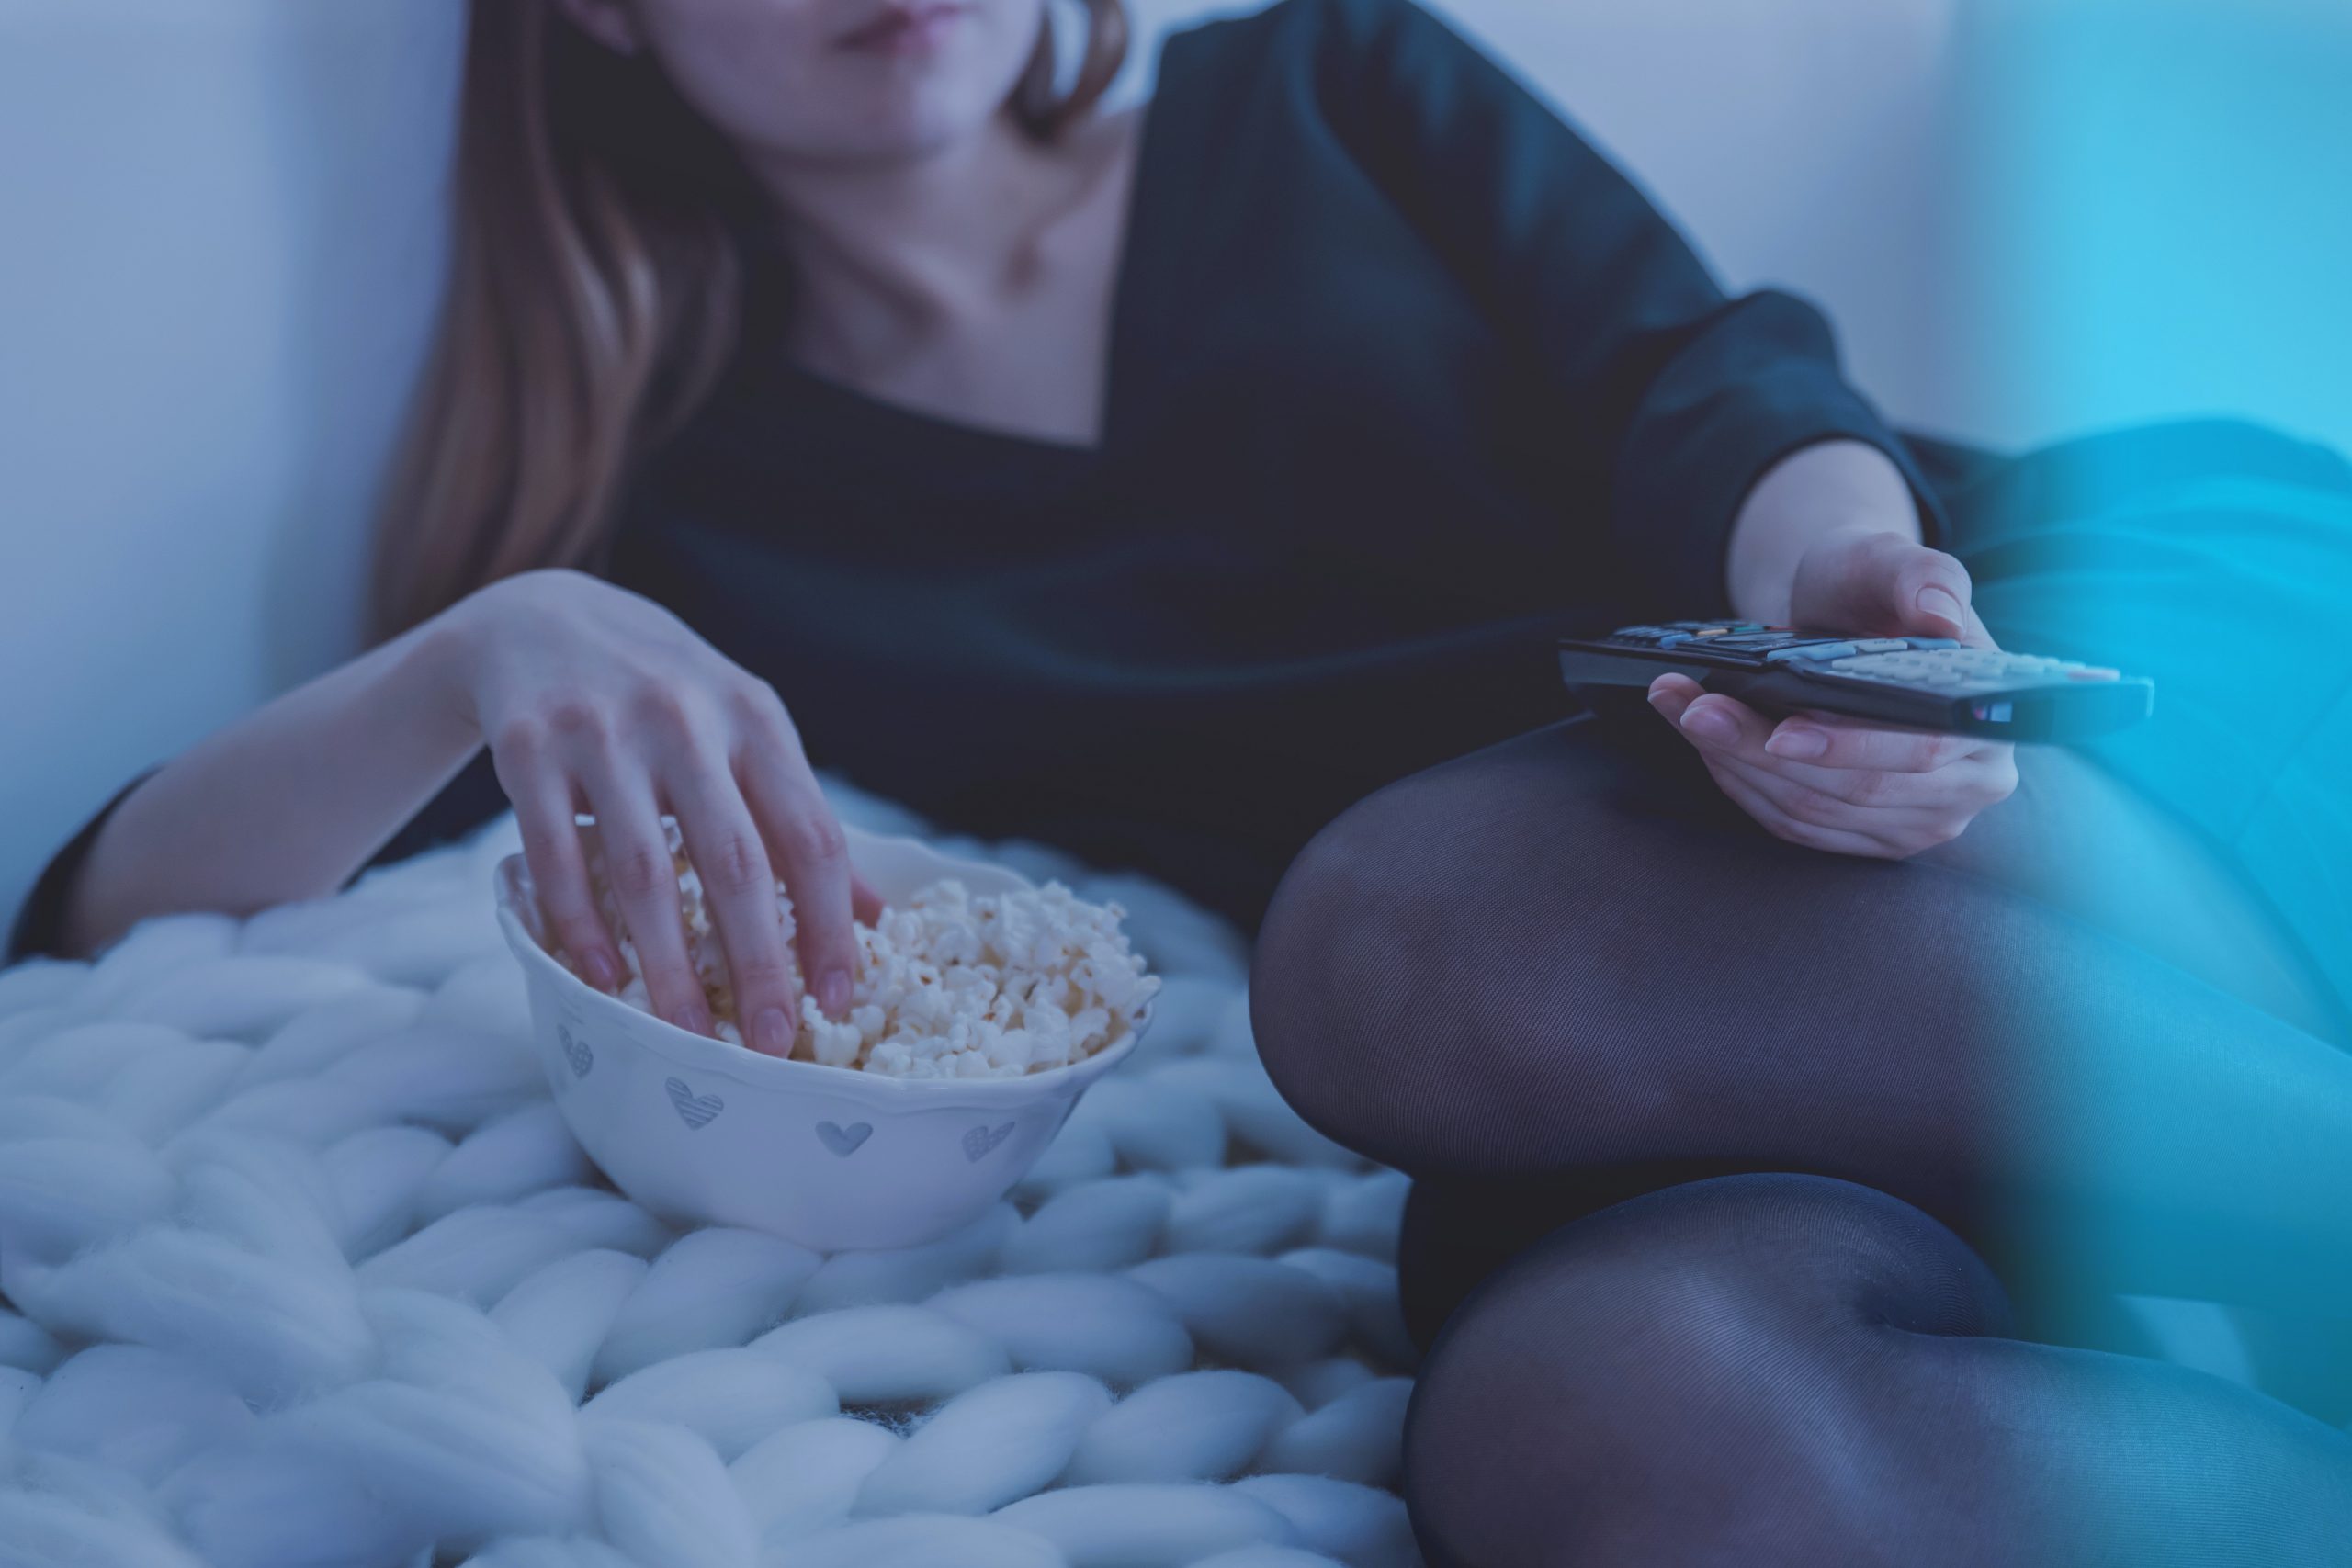 Παρασκευή βράδυ στο σπίτι; Οι editors του «The Notebook» προτείνουν τα αγαπημένα τους shows για binge-watching